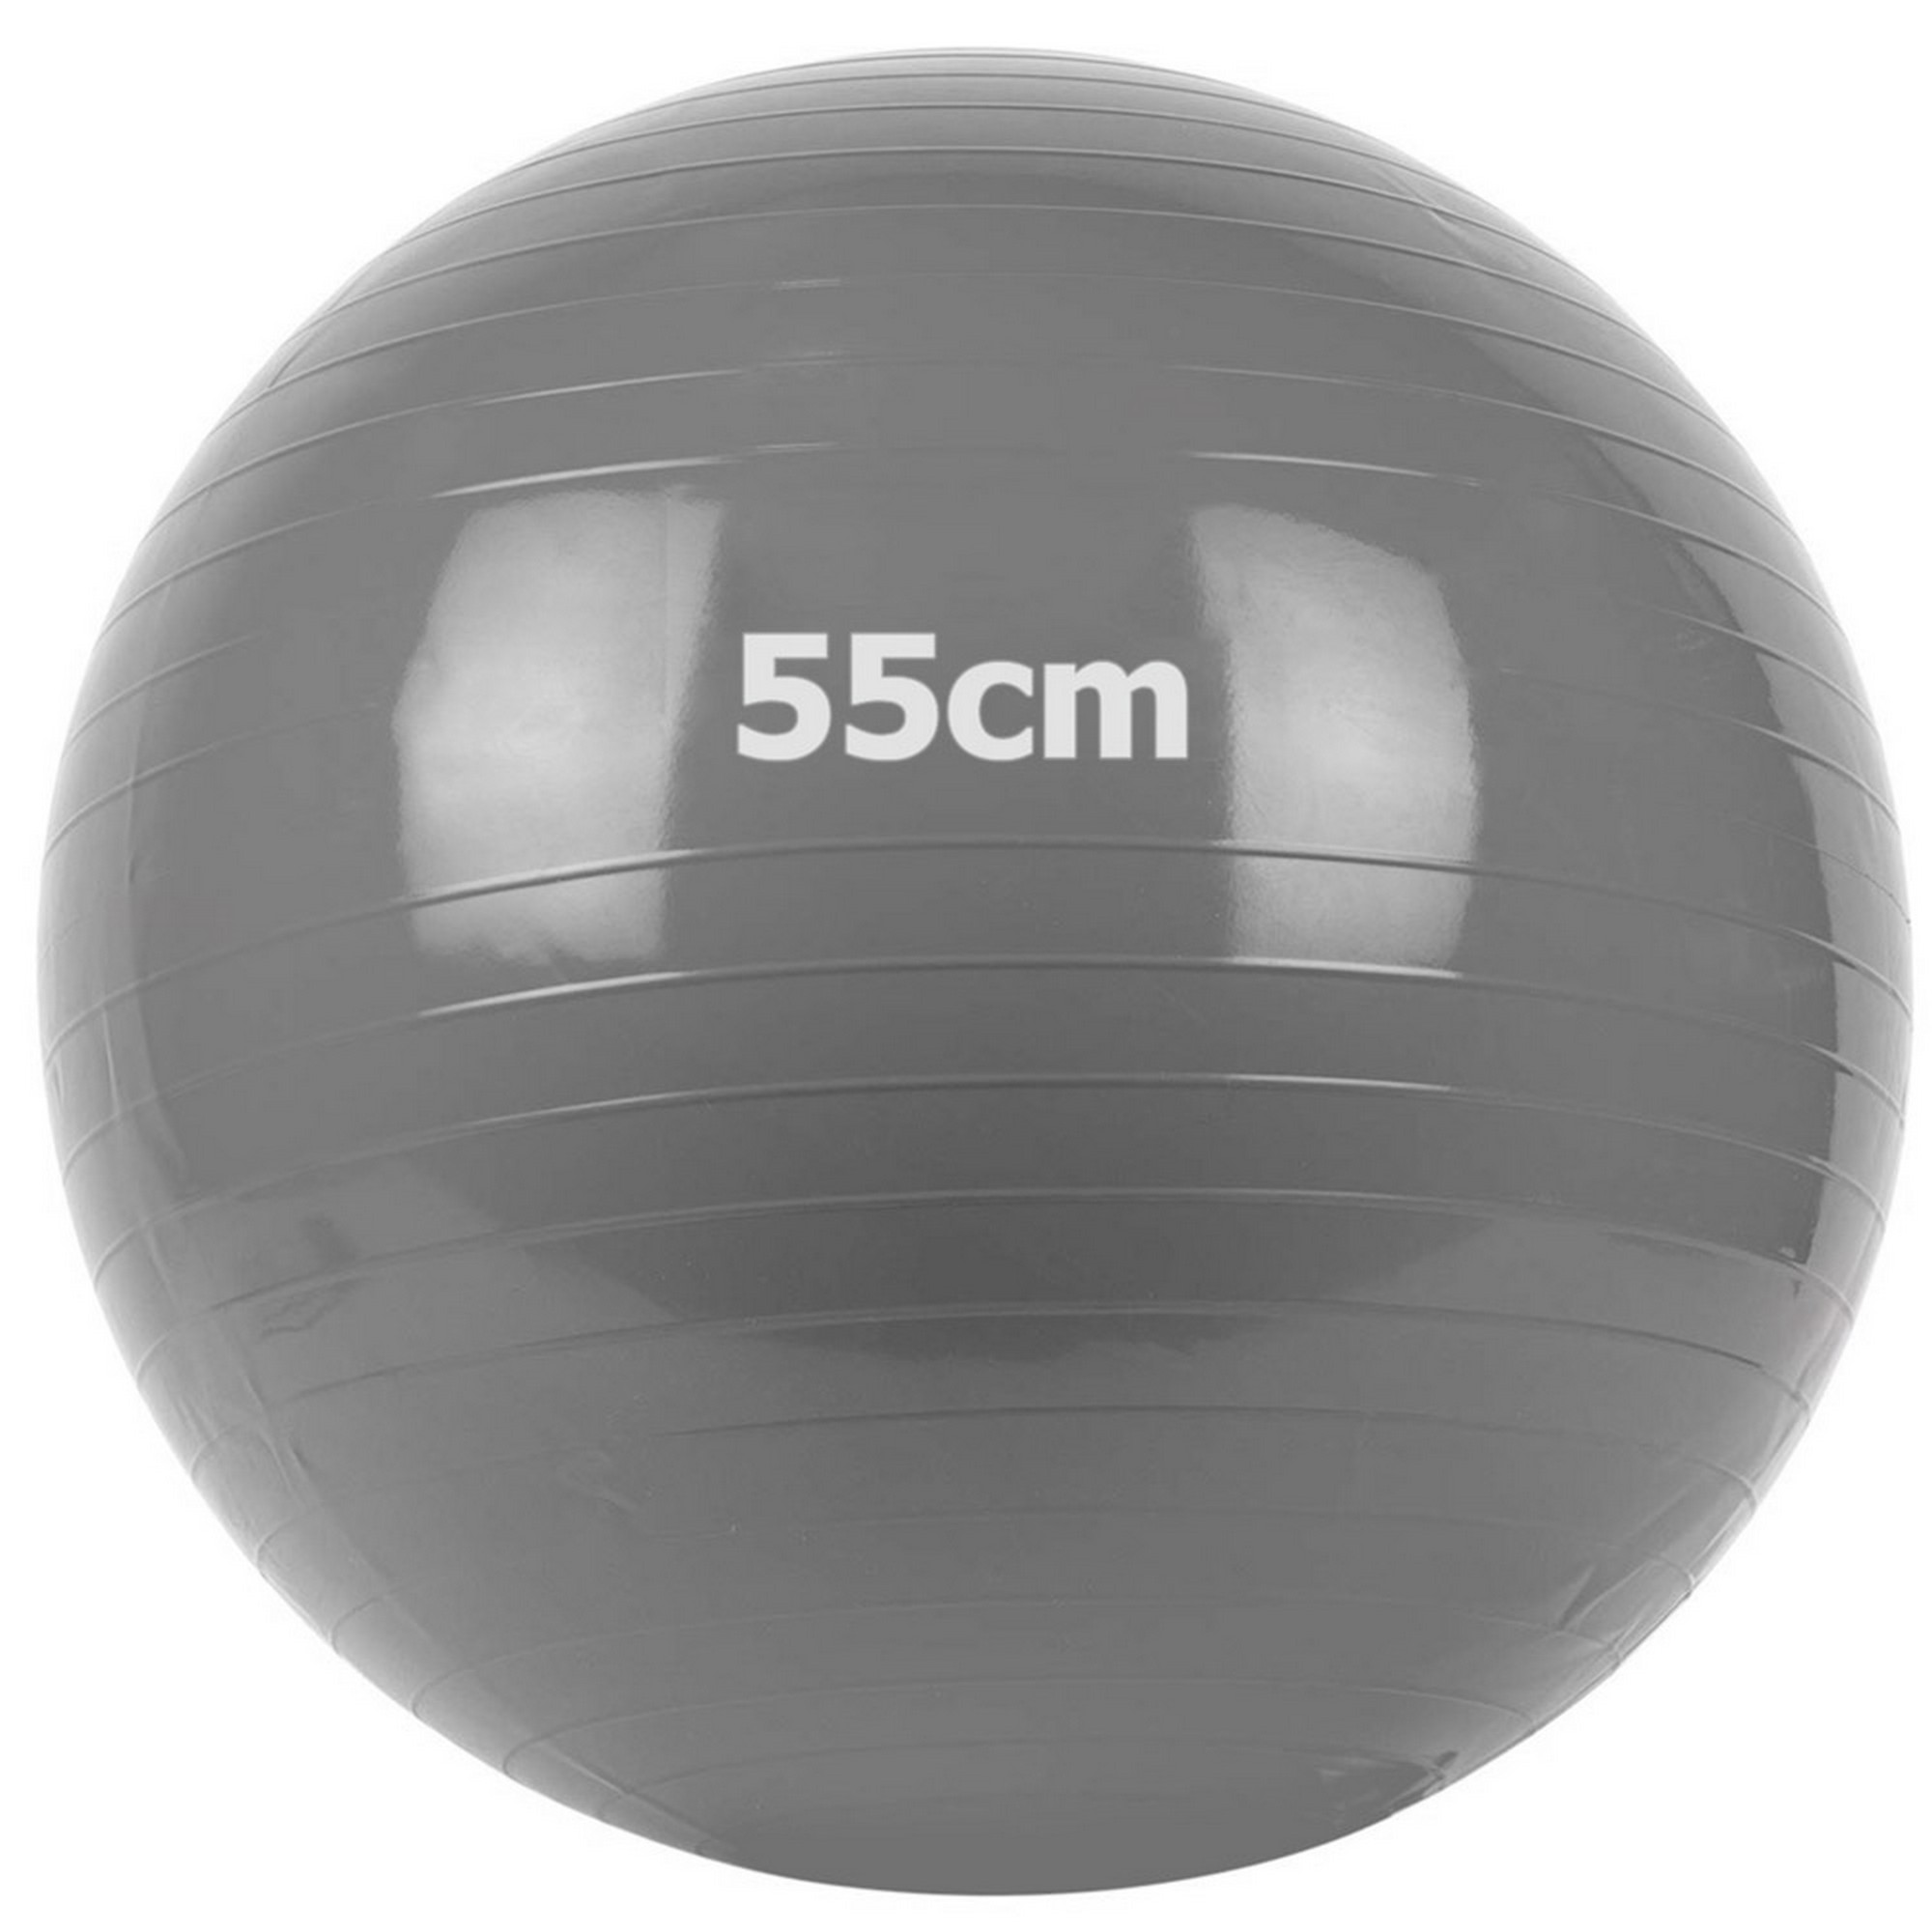 Купить Мяч гимнастический Gum Ball d55 см Sportex GM-55-1 серый,